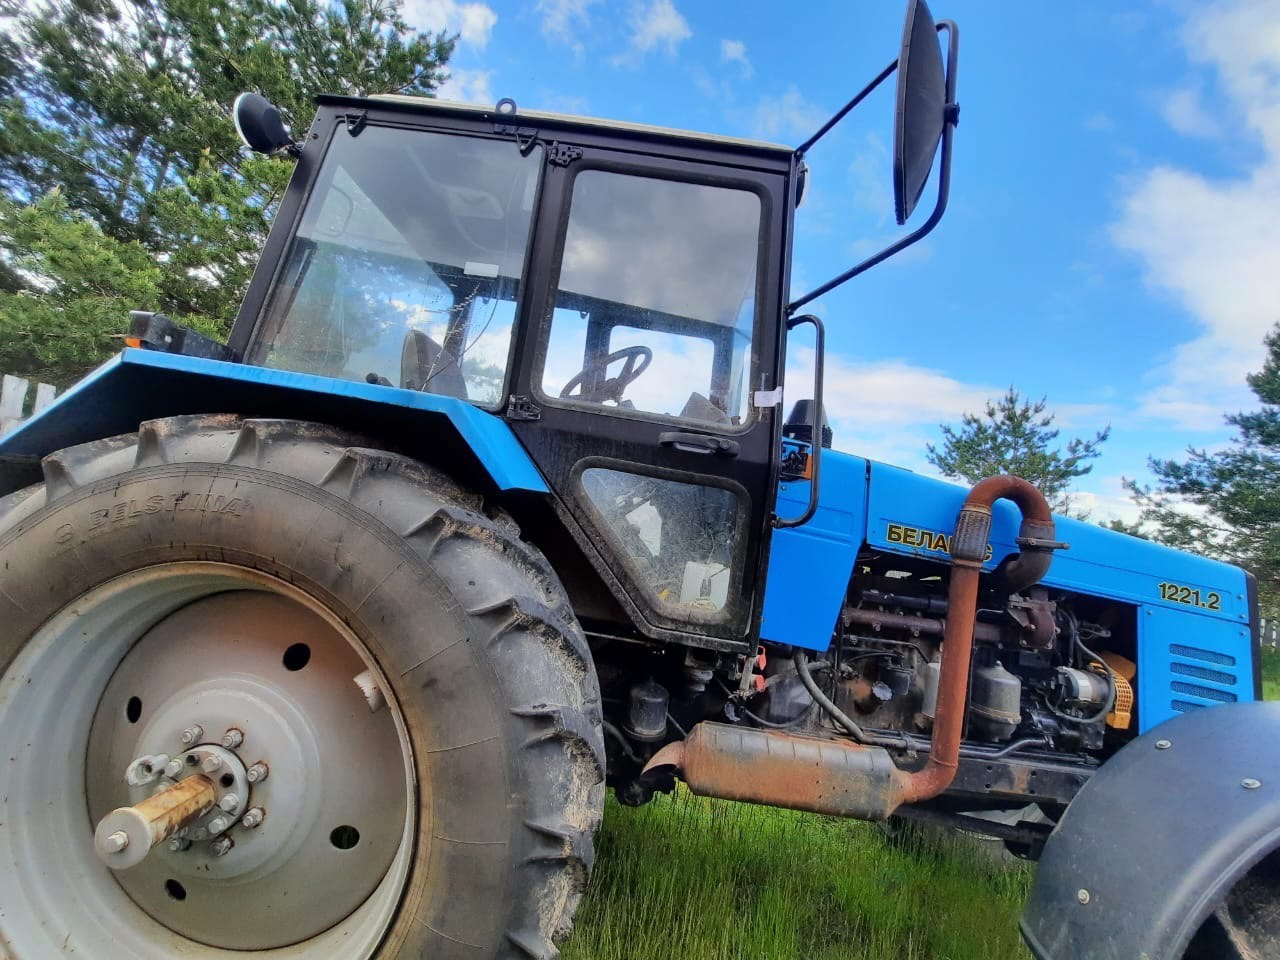 Трактор Беларус 1221.2, государственный регистрационный знак отсутствует, цвет синий, заводской № ма